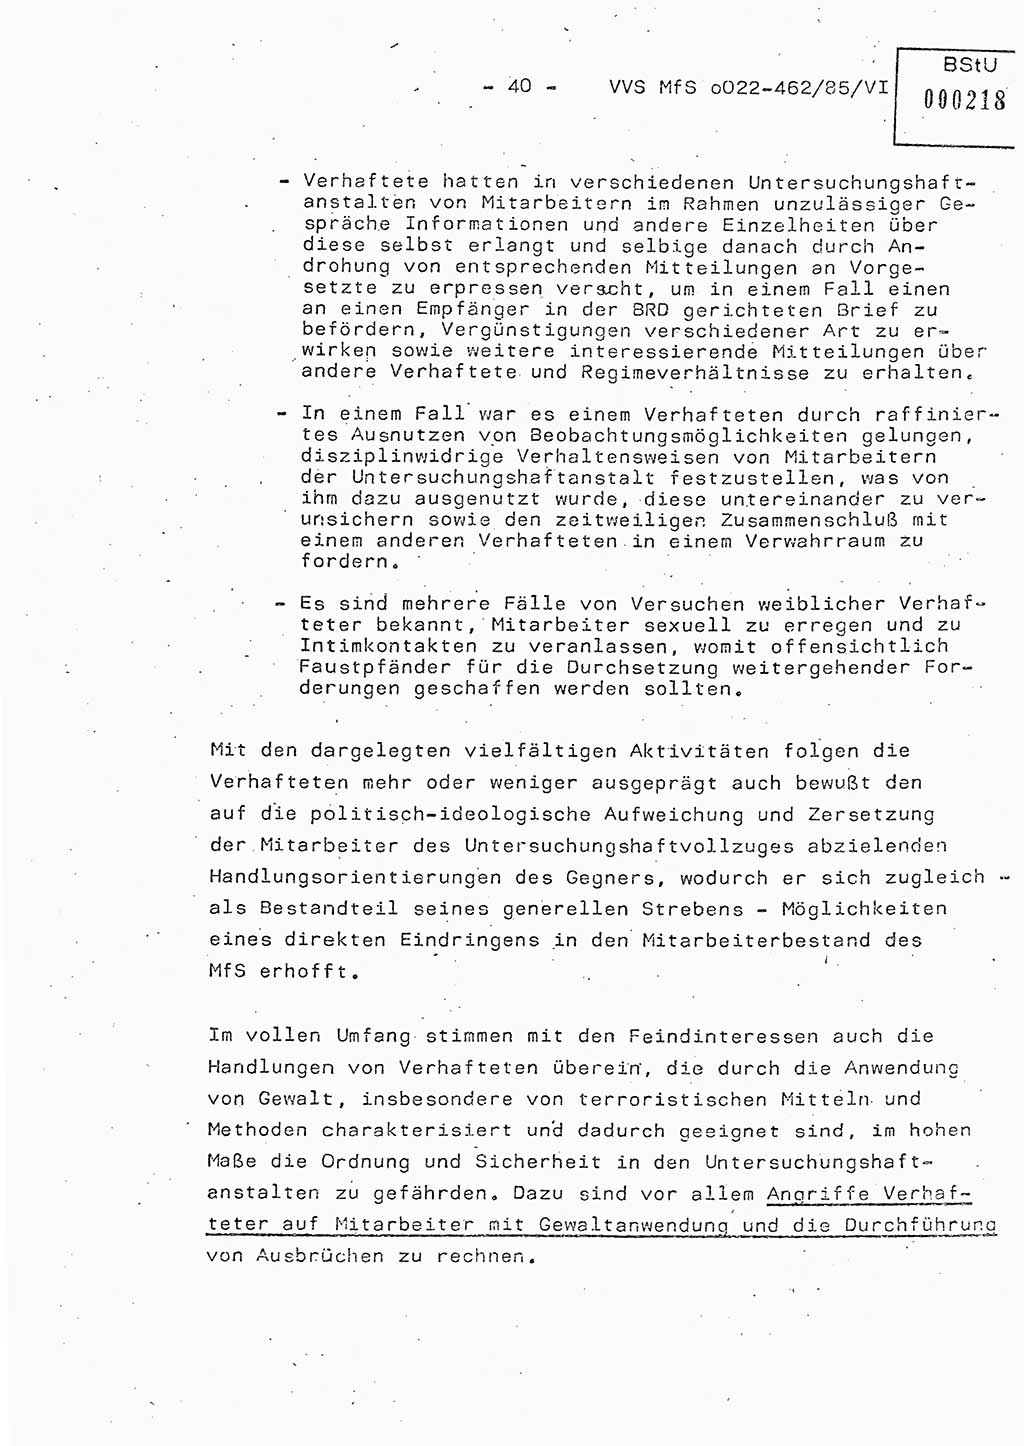 Der Untersuchungshaftvollzug im MfS, Schulungsmaterial Teil Ⅵ, Ministerium für Staatssicherheit [Deutsche Demokratische Republik (DDR)], Abteilung (Abt.) ⅩⅣ, Vertrauliche Verschlußsache (VVS) o022-462/85/Ⅵ, Berlin 1985, Seite 40 (Sch.-Mat. Ⅵ MfS DDR Abt. ⅩⅣ VVS o022-462/85/Ⅵ 1985, S. 40)